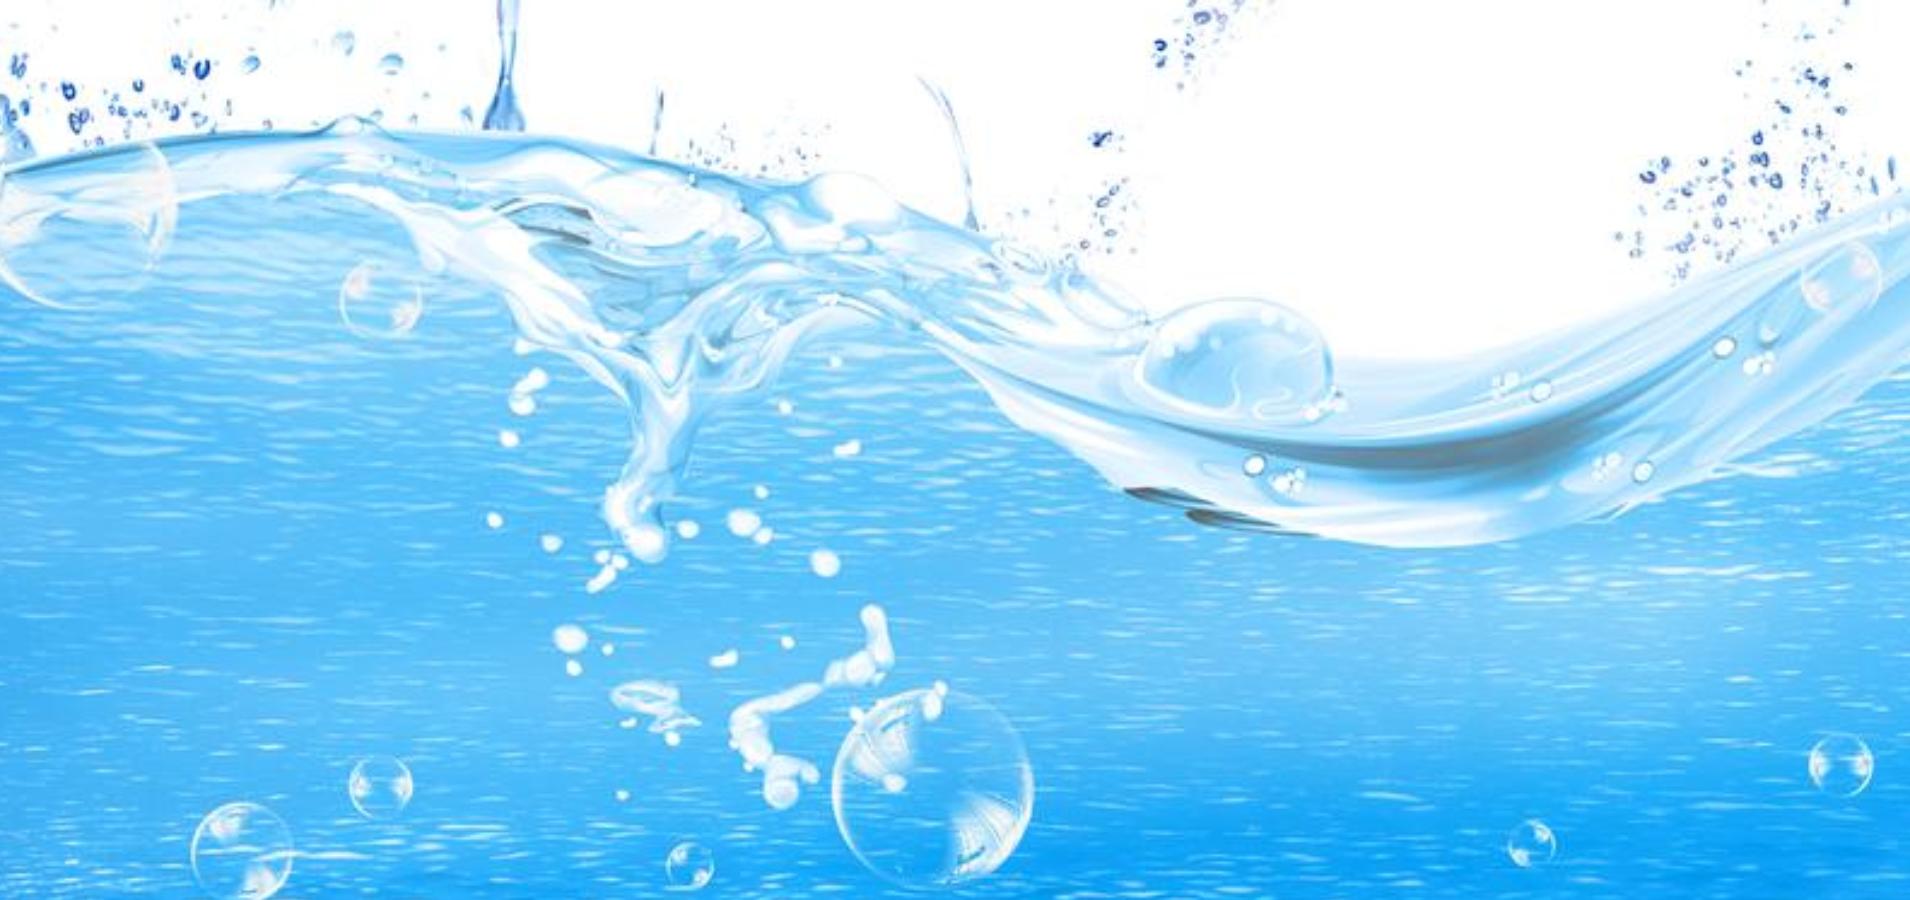 改善水生态  循环水资源